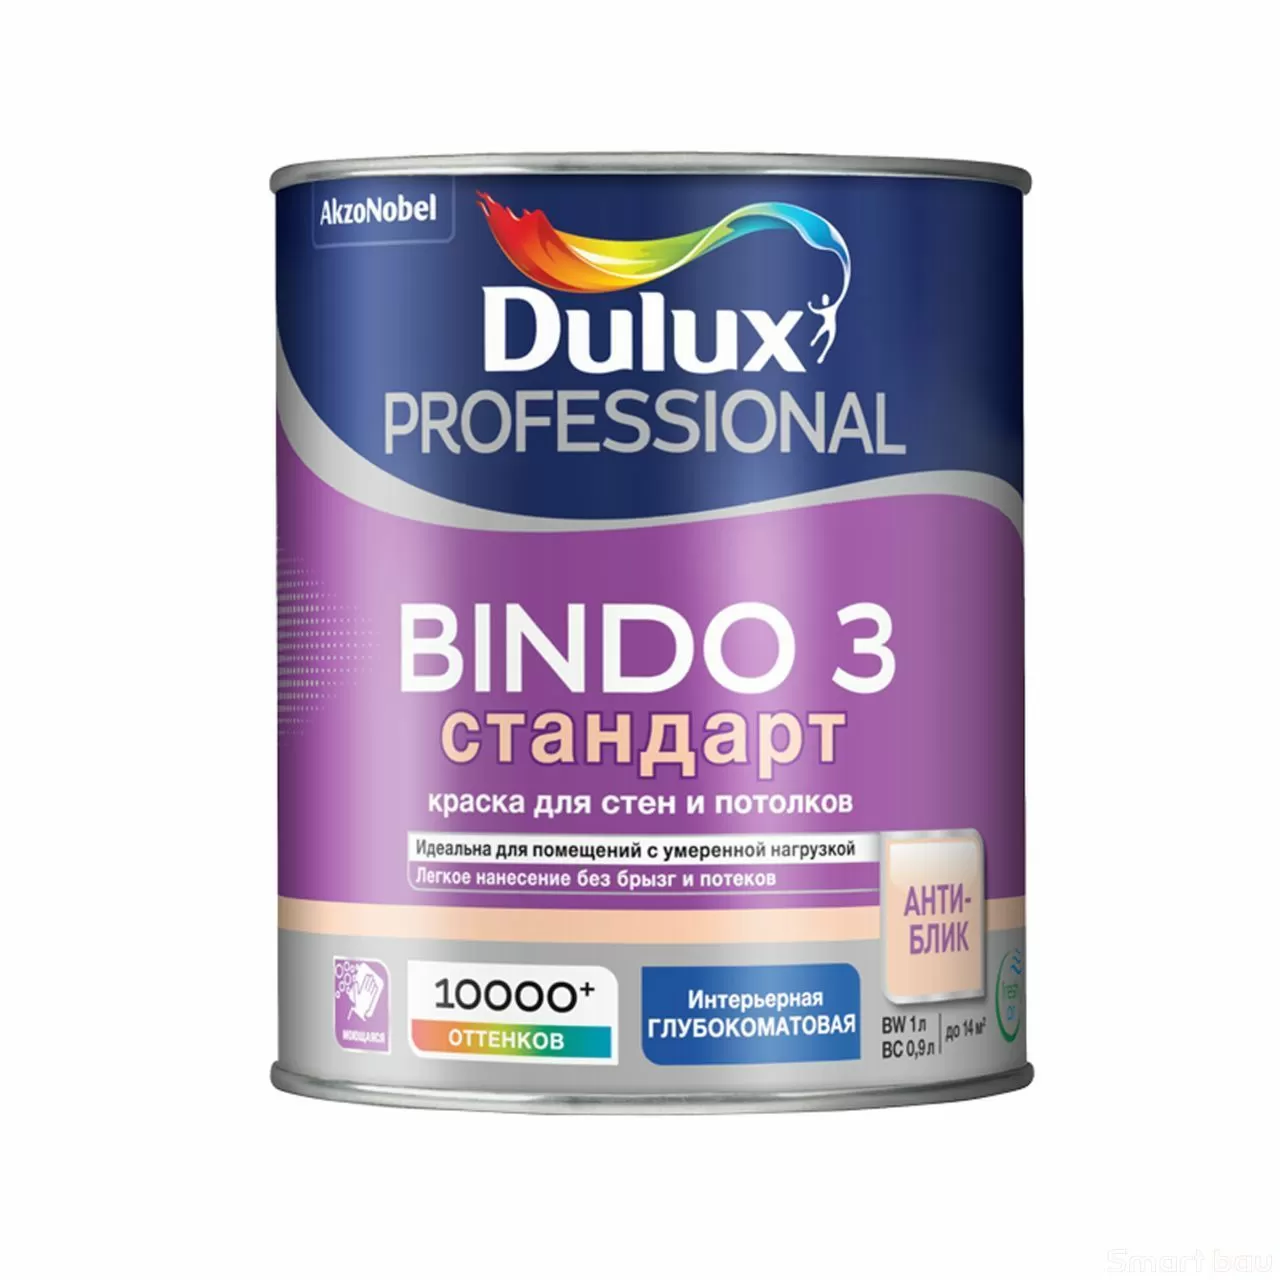 Антибликовая краска для стен и потолков, глубокоматовая Dulux Bindo 3 Стандарт фото